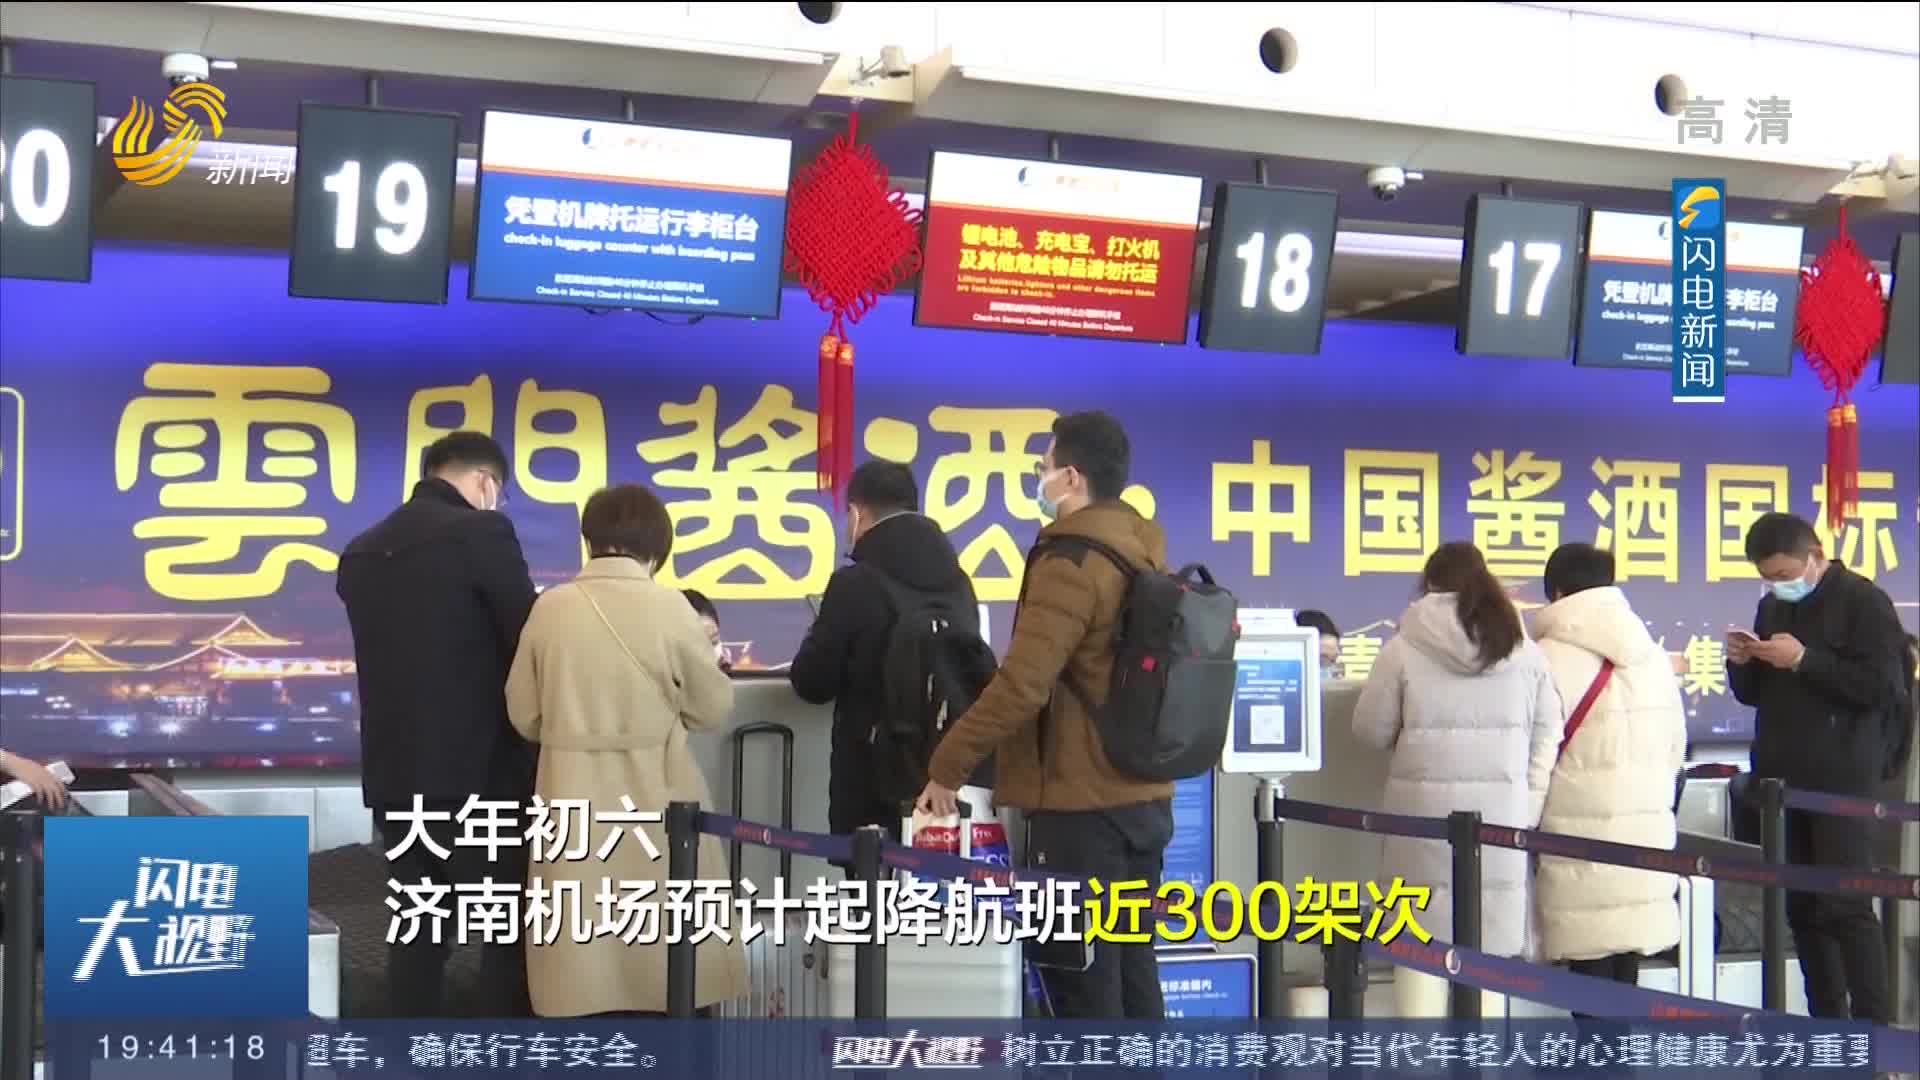 【春节假期返程】济南机场迎来返程小高峰 单日旅客吞吐量约3.3万余人次